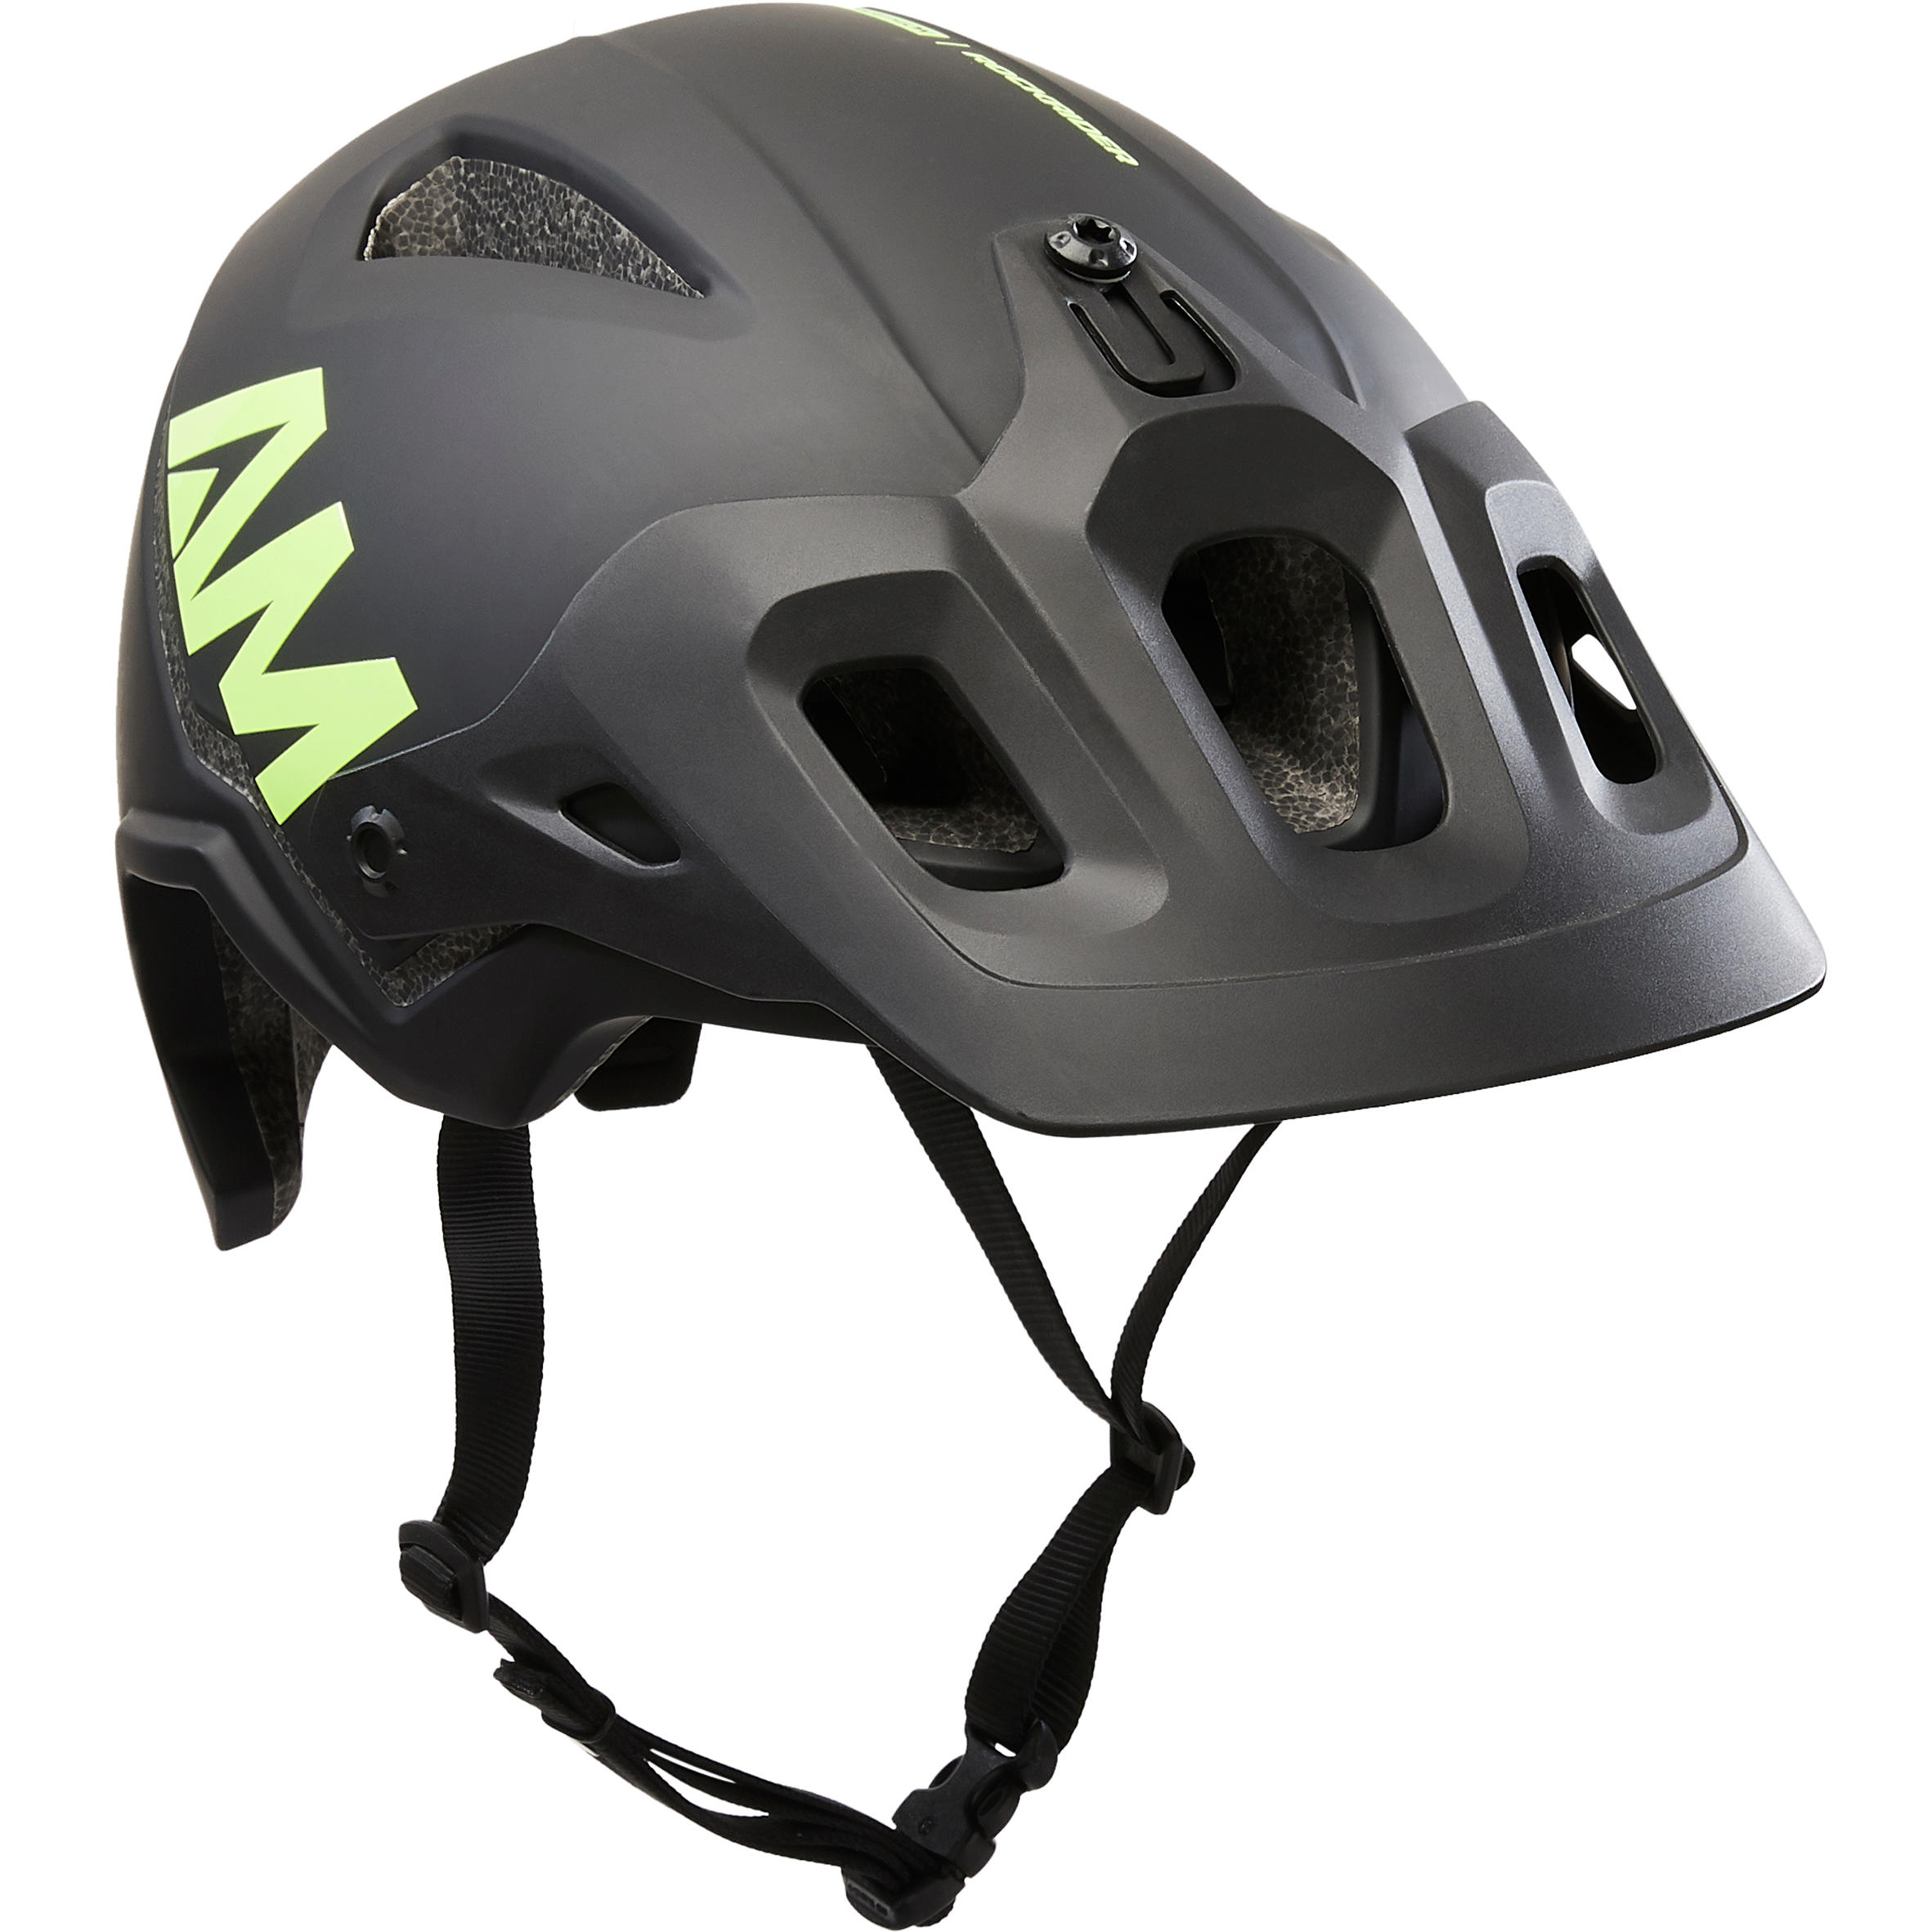 decathlon helmet price